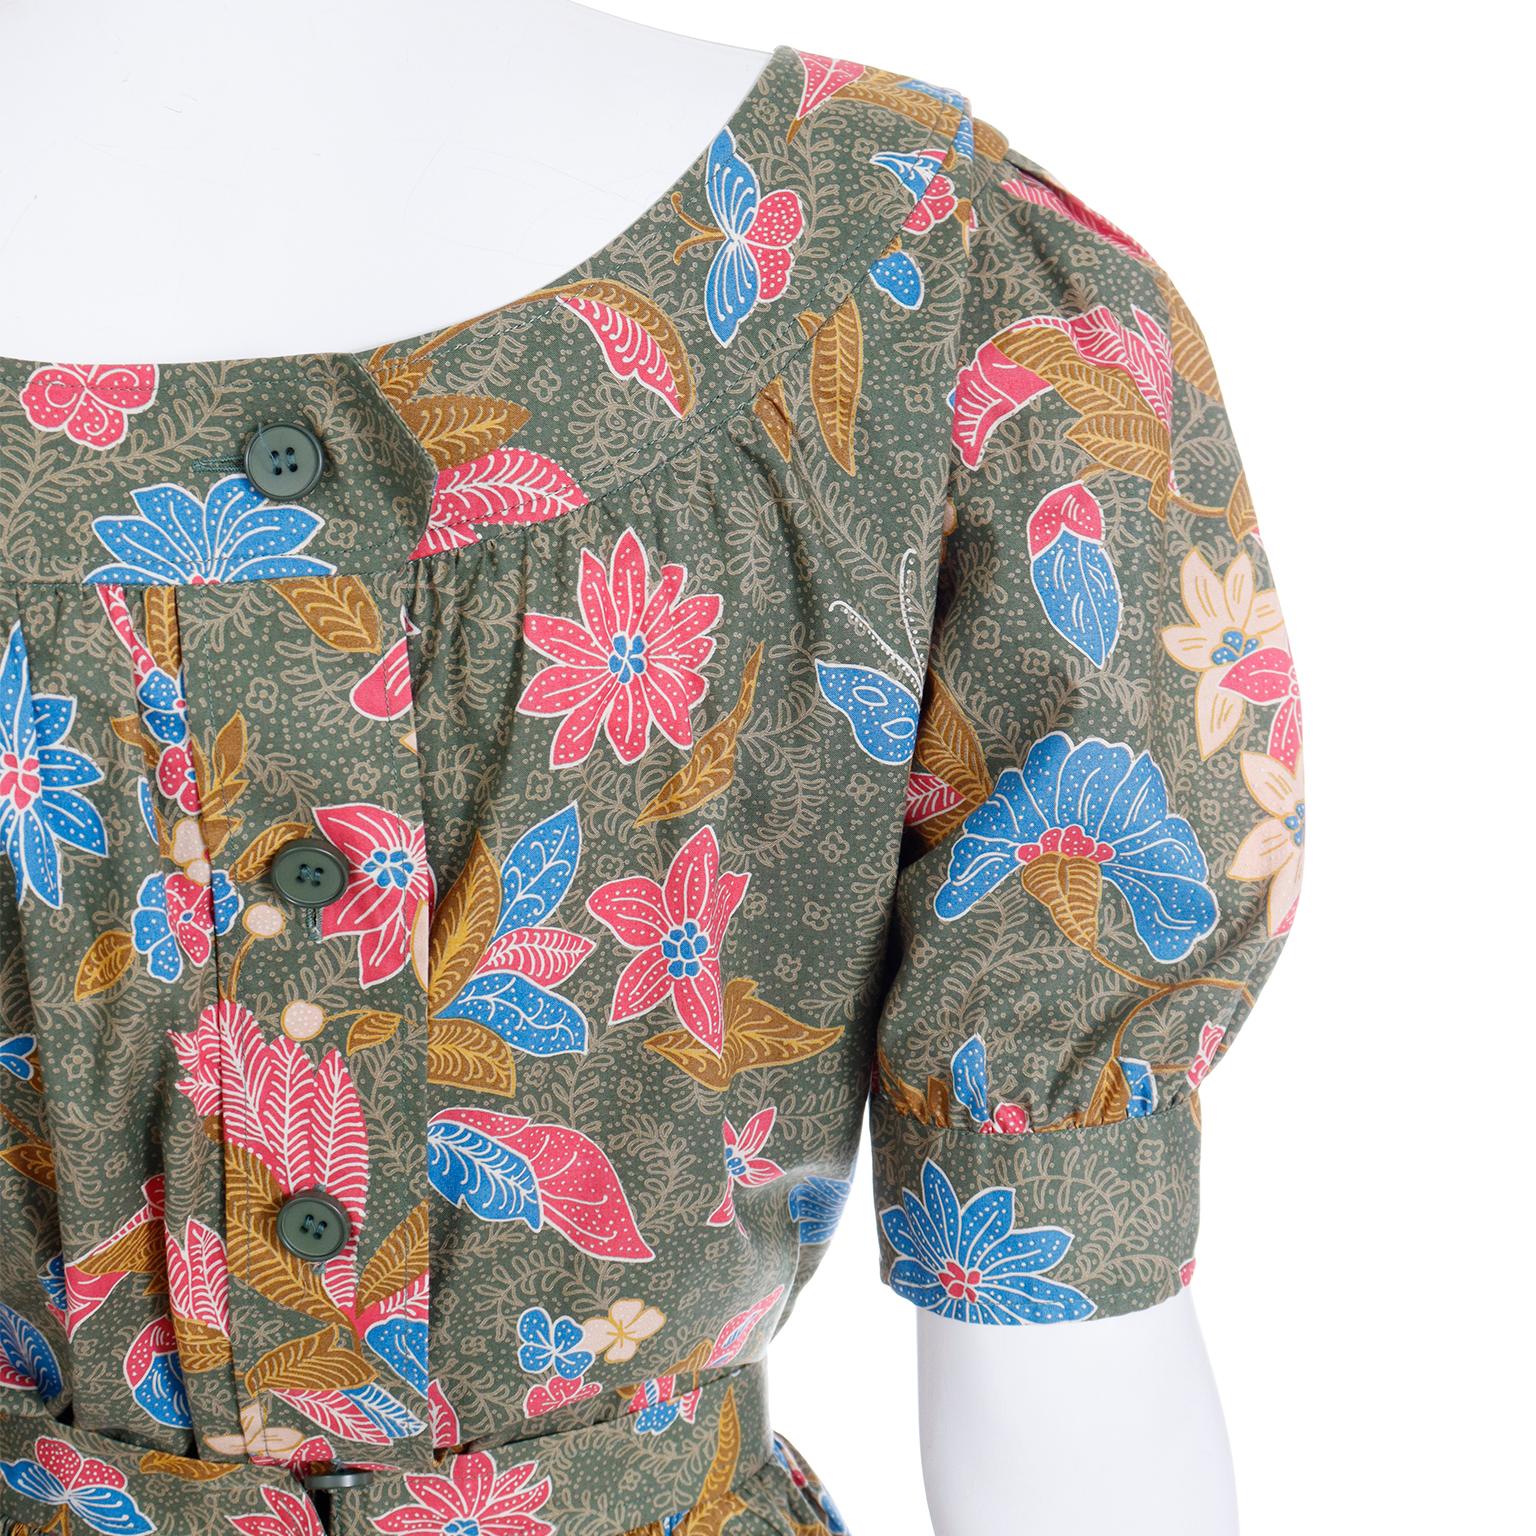 S/S 1986 Yves Saint Laurent Vintage YSL Botanical Blouse & Skirt 2 Pc Dress For Sale 2